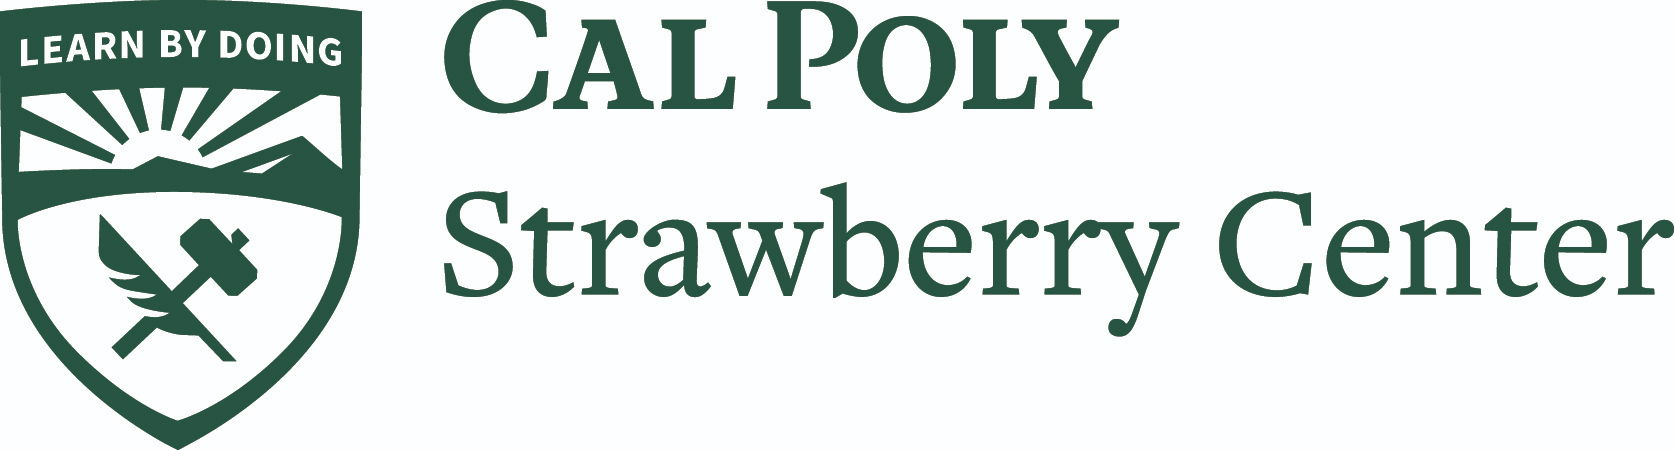 Cal Poly Strawberry Center logo